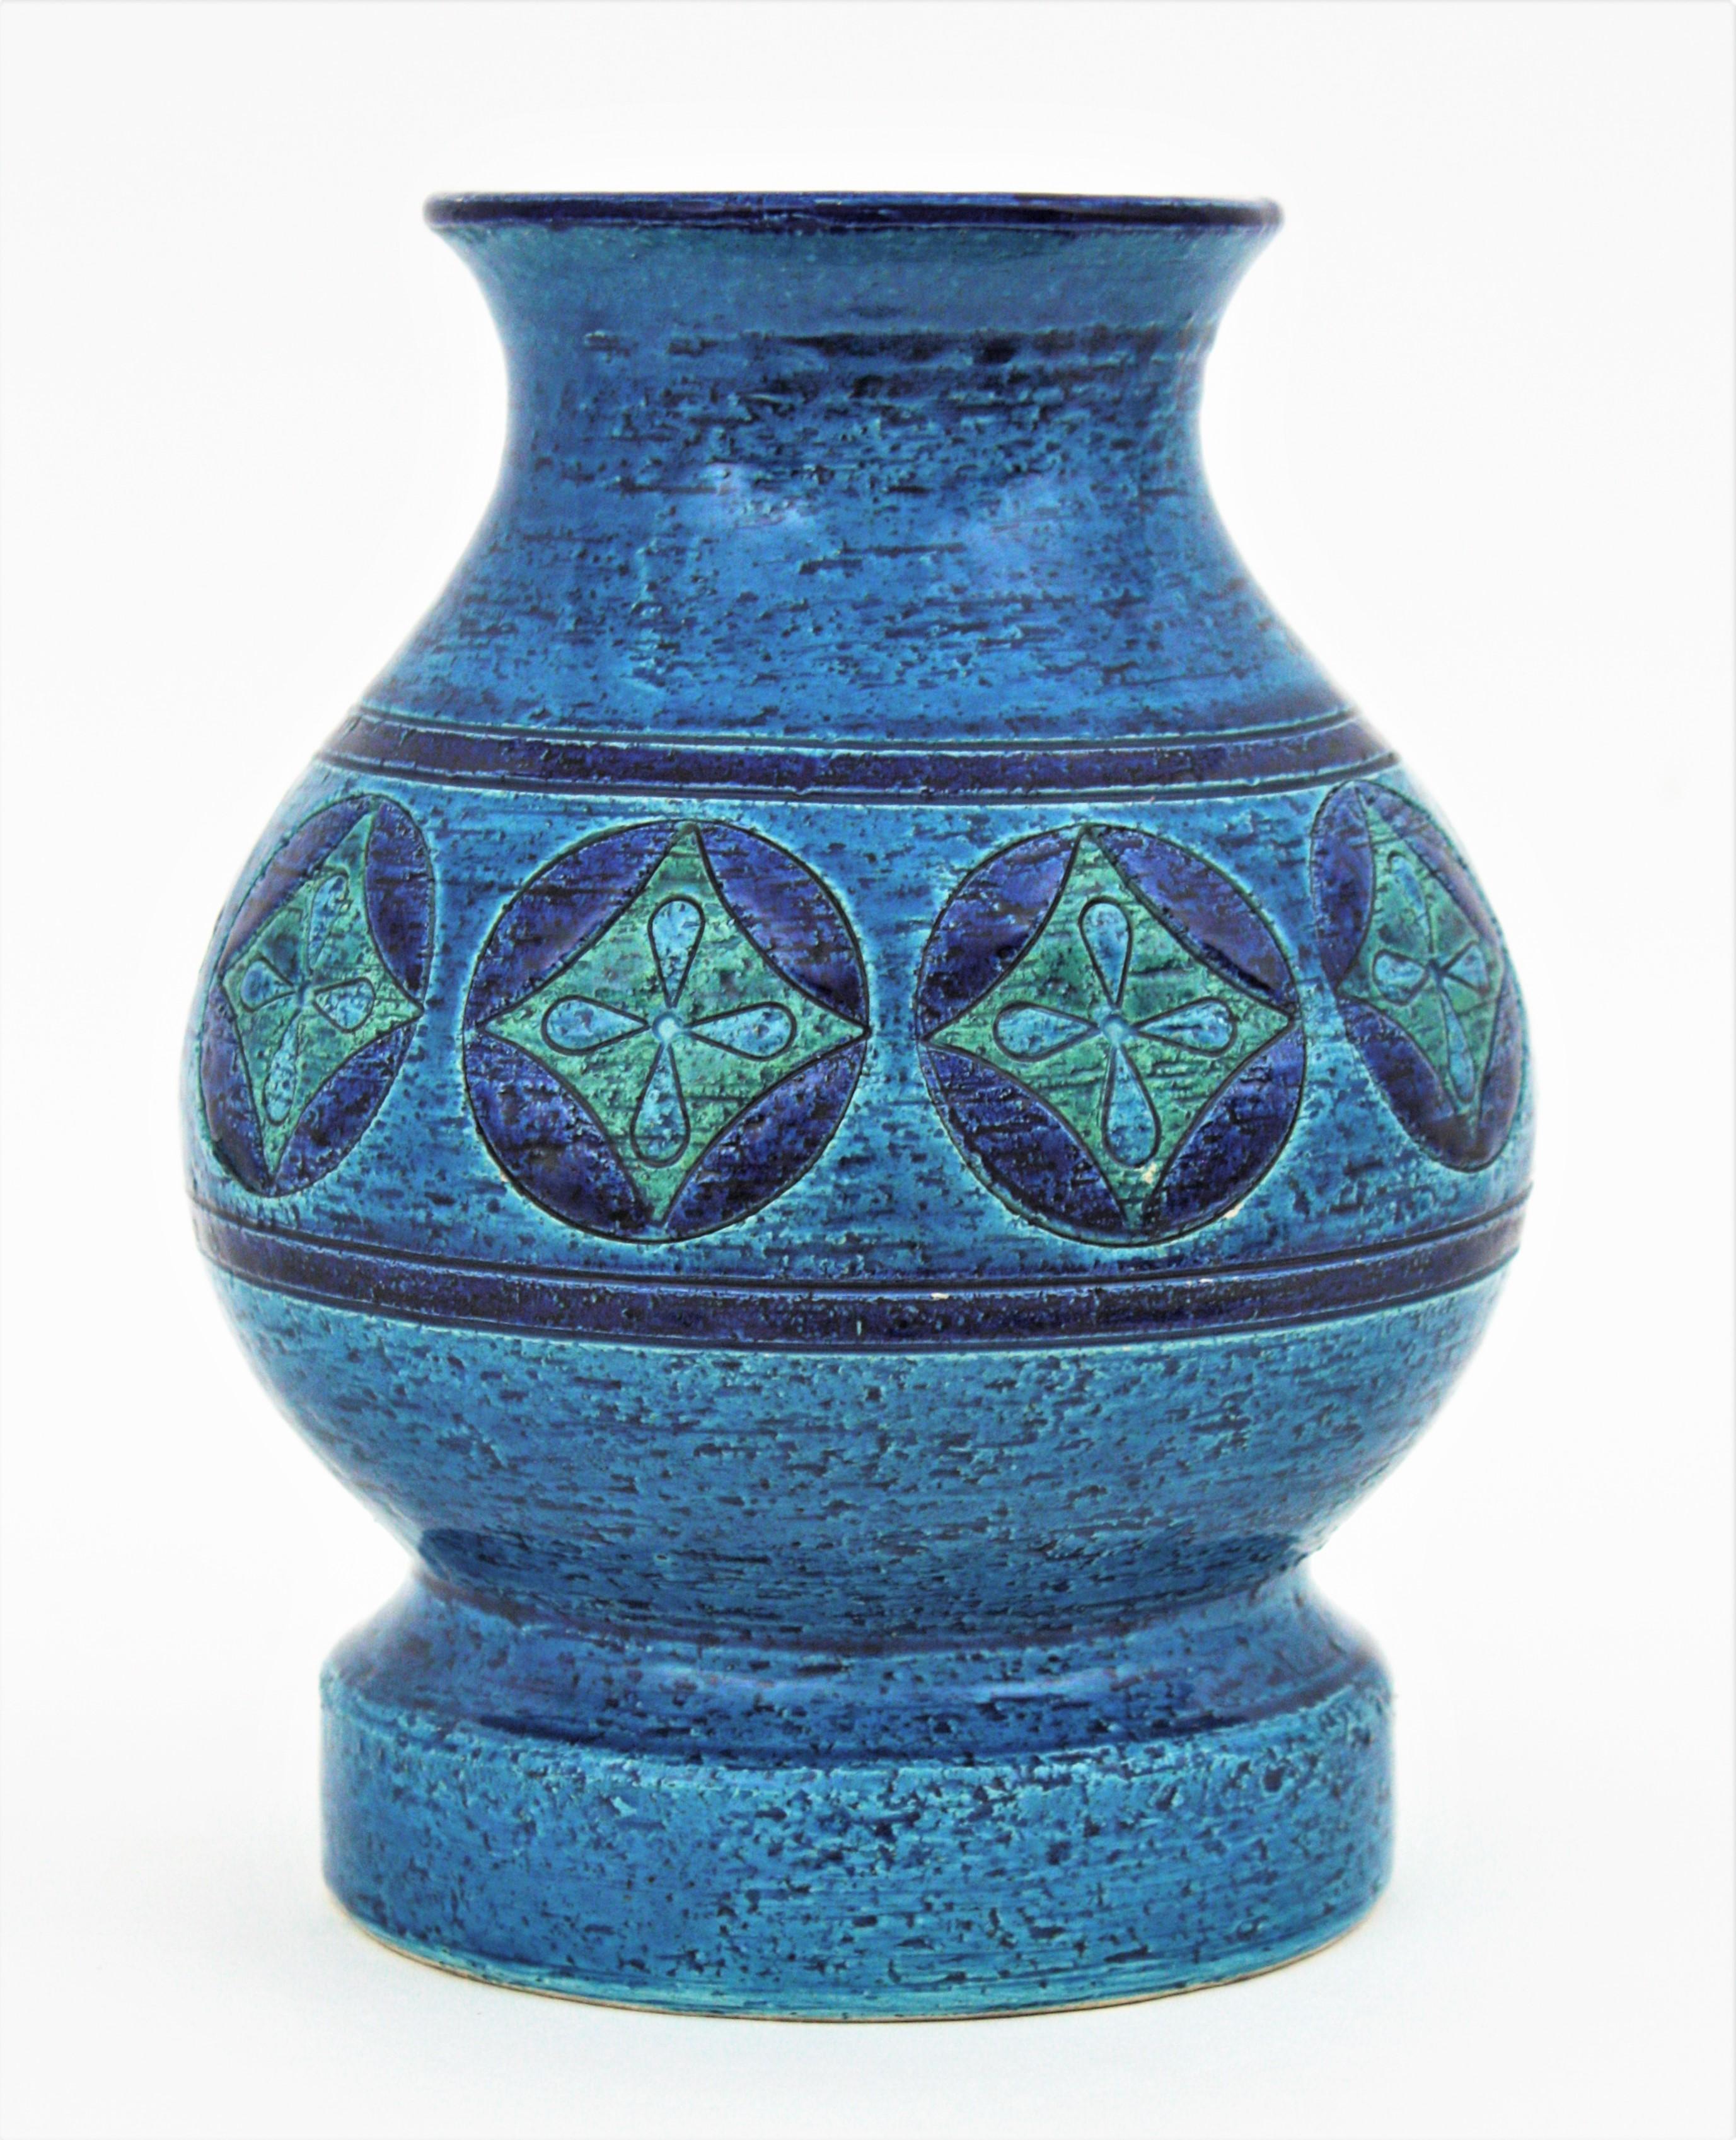 Seltener Entwurf von Aldo Londi für Bitossi. Rimini Blue Keramikvase mit Fuß und geometrischen Motiven, Italien, 1960er Jahre
Diese atemberaubende glasierte Keramik-Vase hat ein Muster mit Kreisen in dunkelblau mit Rhombus innen in den Farben grün